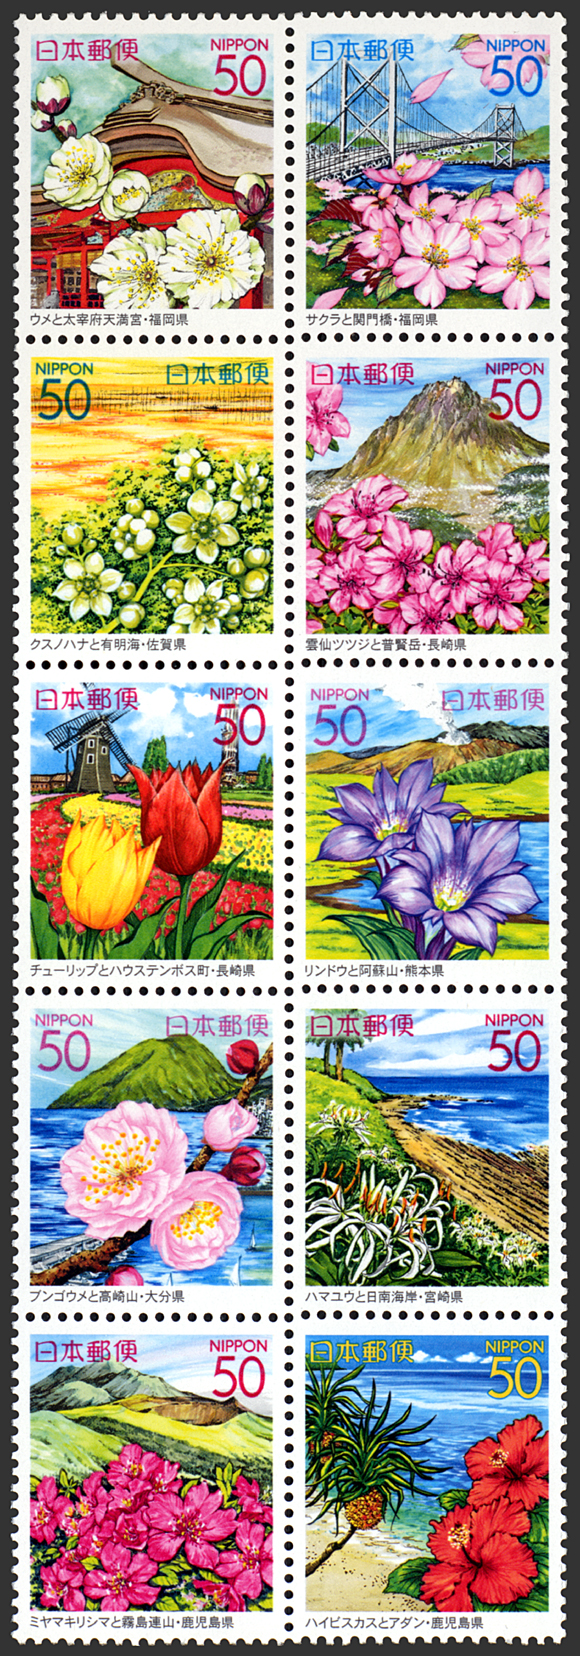 九州7県版「九州の花と風景」10種連刷